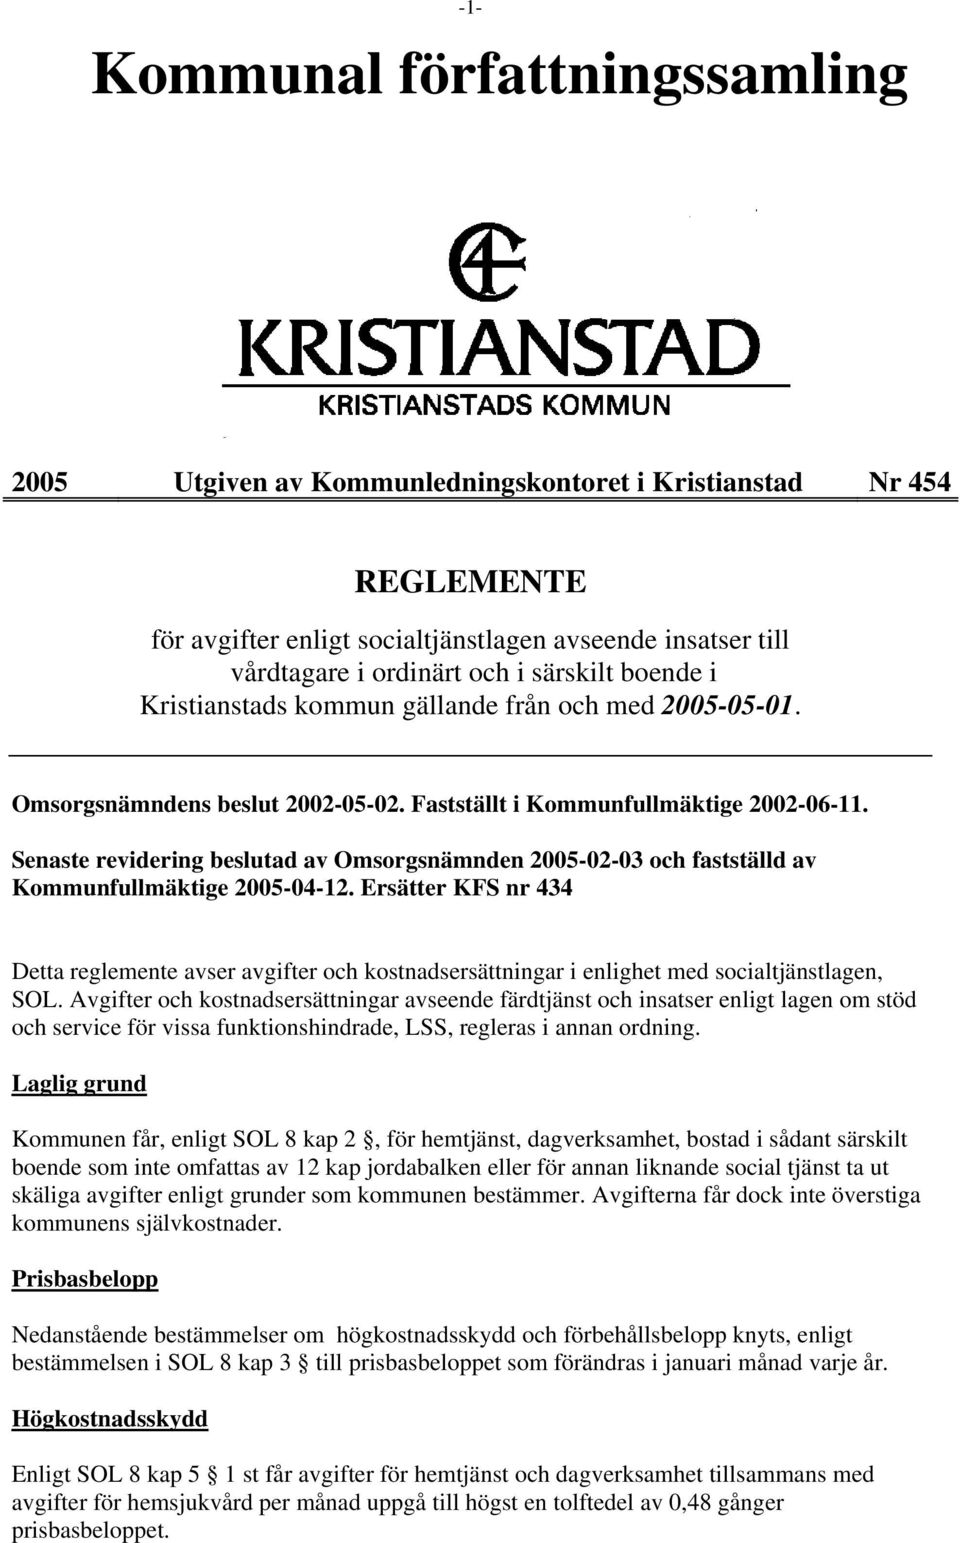 Senaste revidering beslutad av Omsorgsnämnden 2005-02-03 och fastställd av Kommunfullmäktige 2005-04-12.